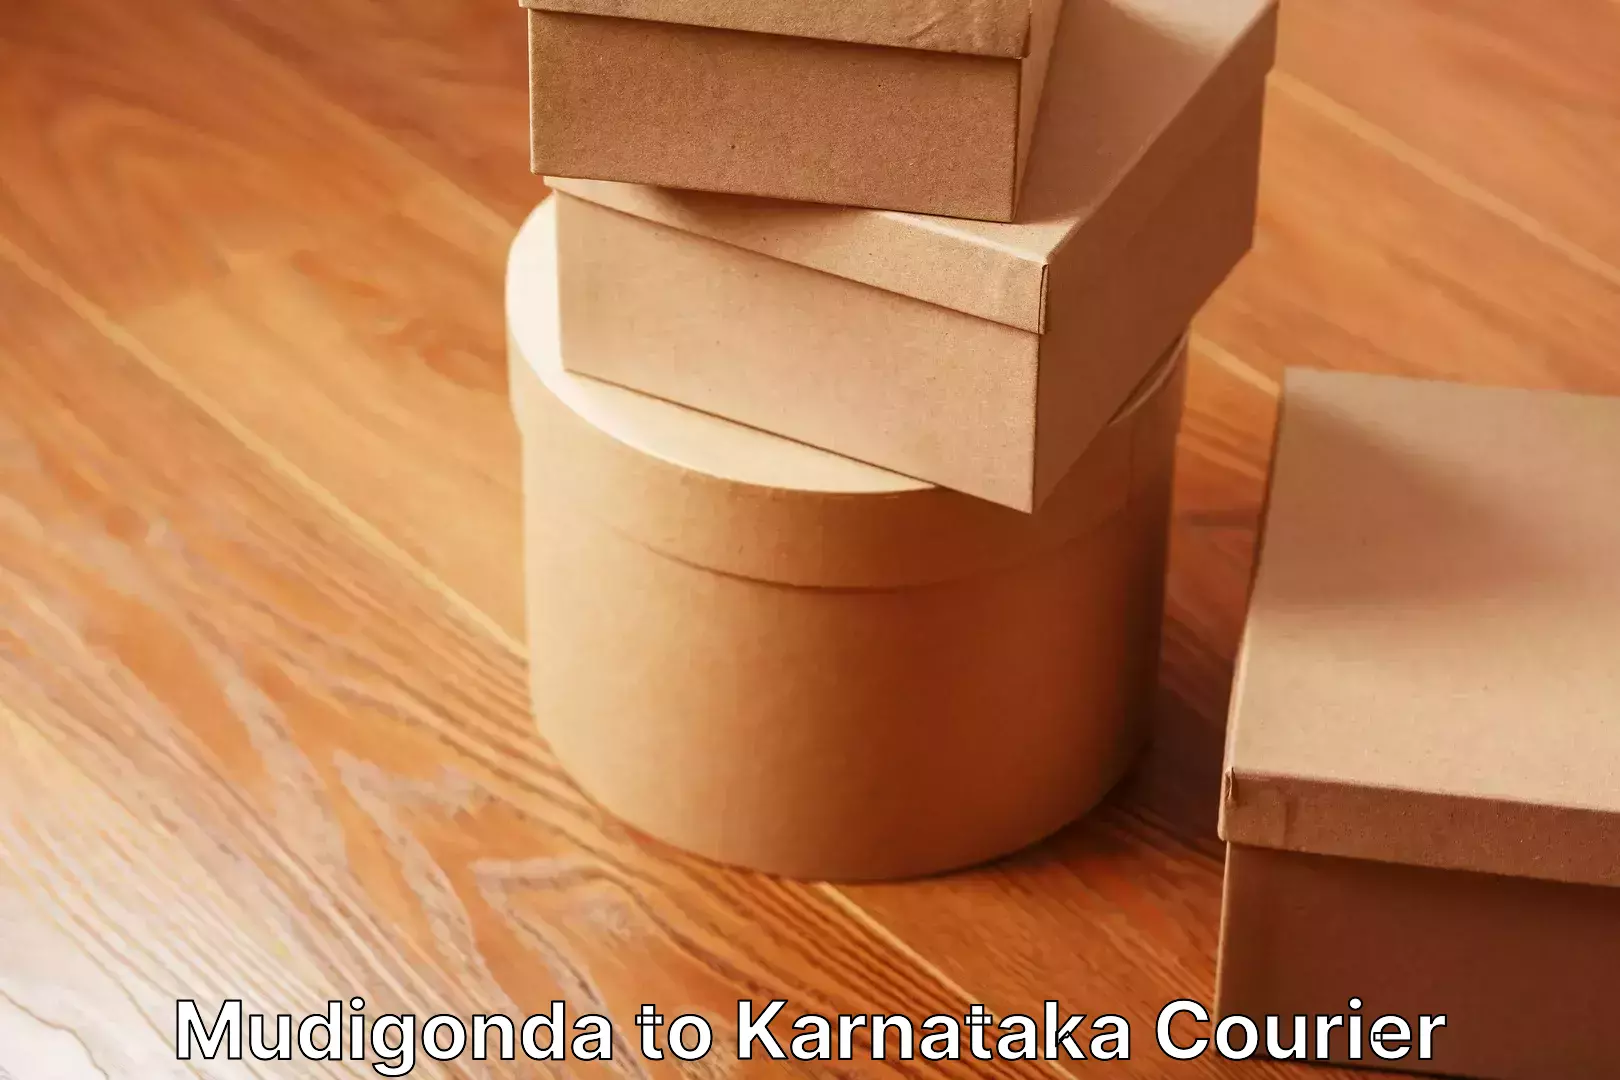 Residential furniture transport in Mudigonda to Karnataka